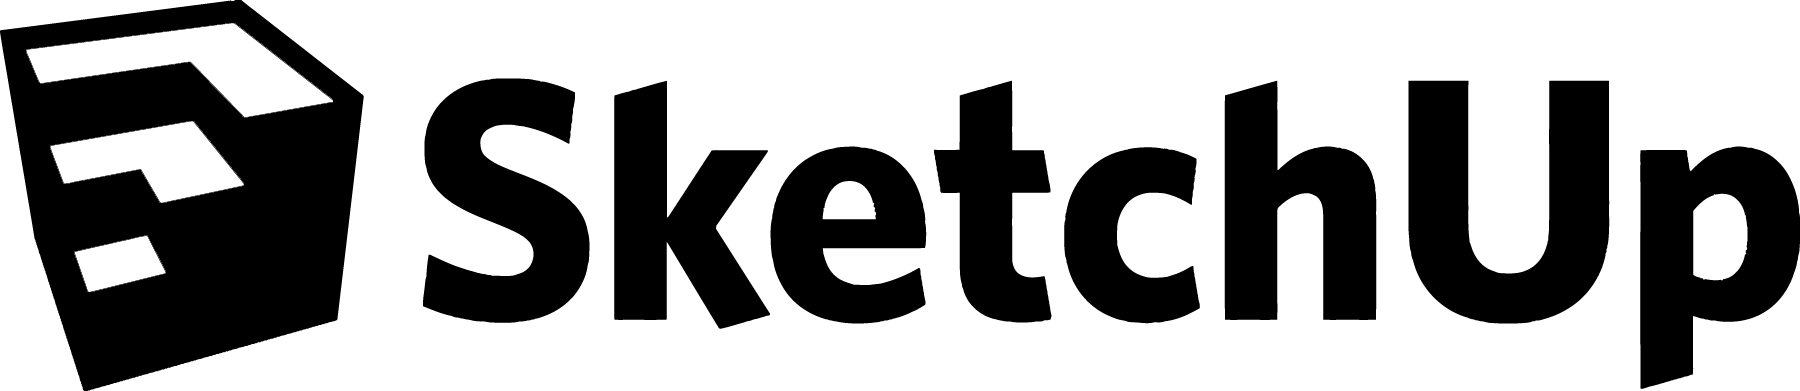 Trimble's SketchUp Logo